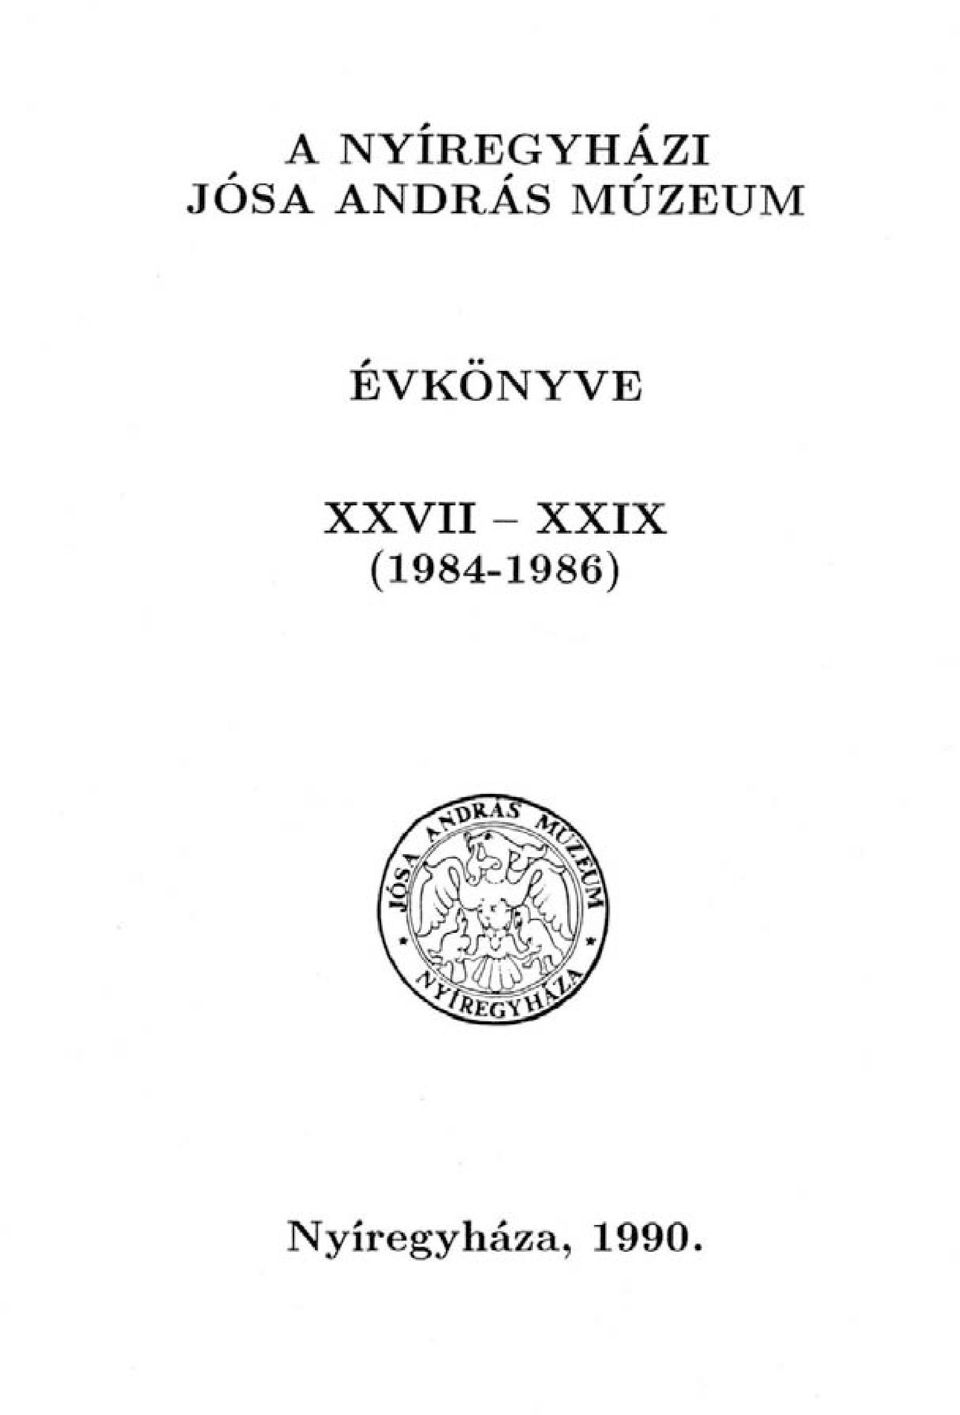 ÉVKÖNYVE XXVII - XXIX